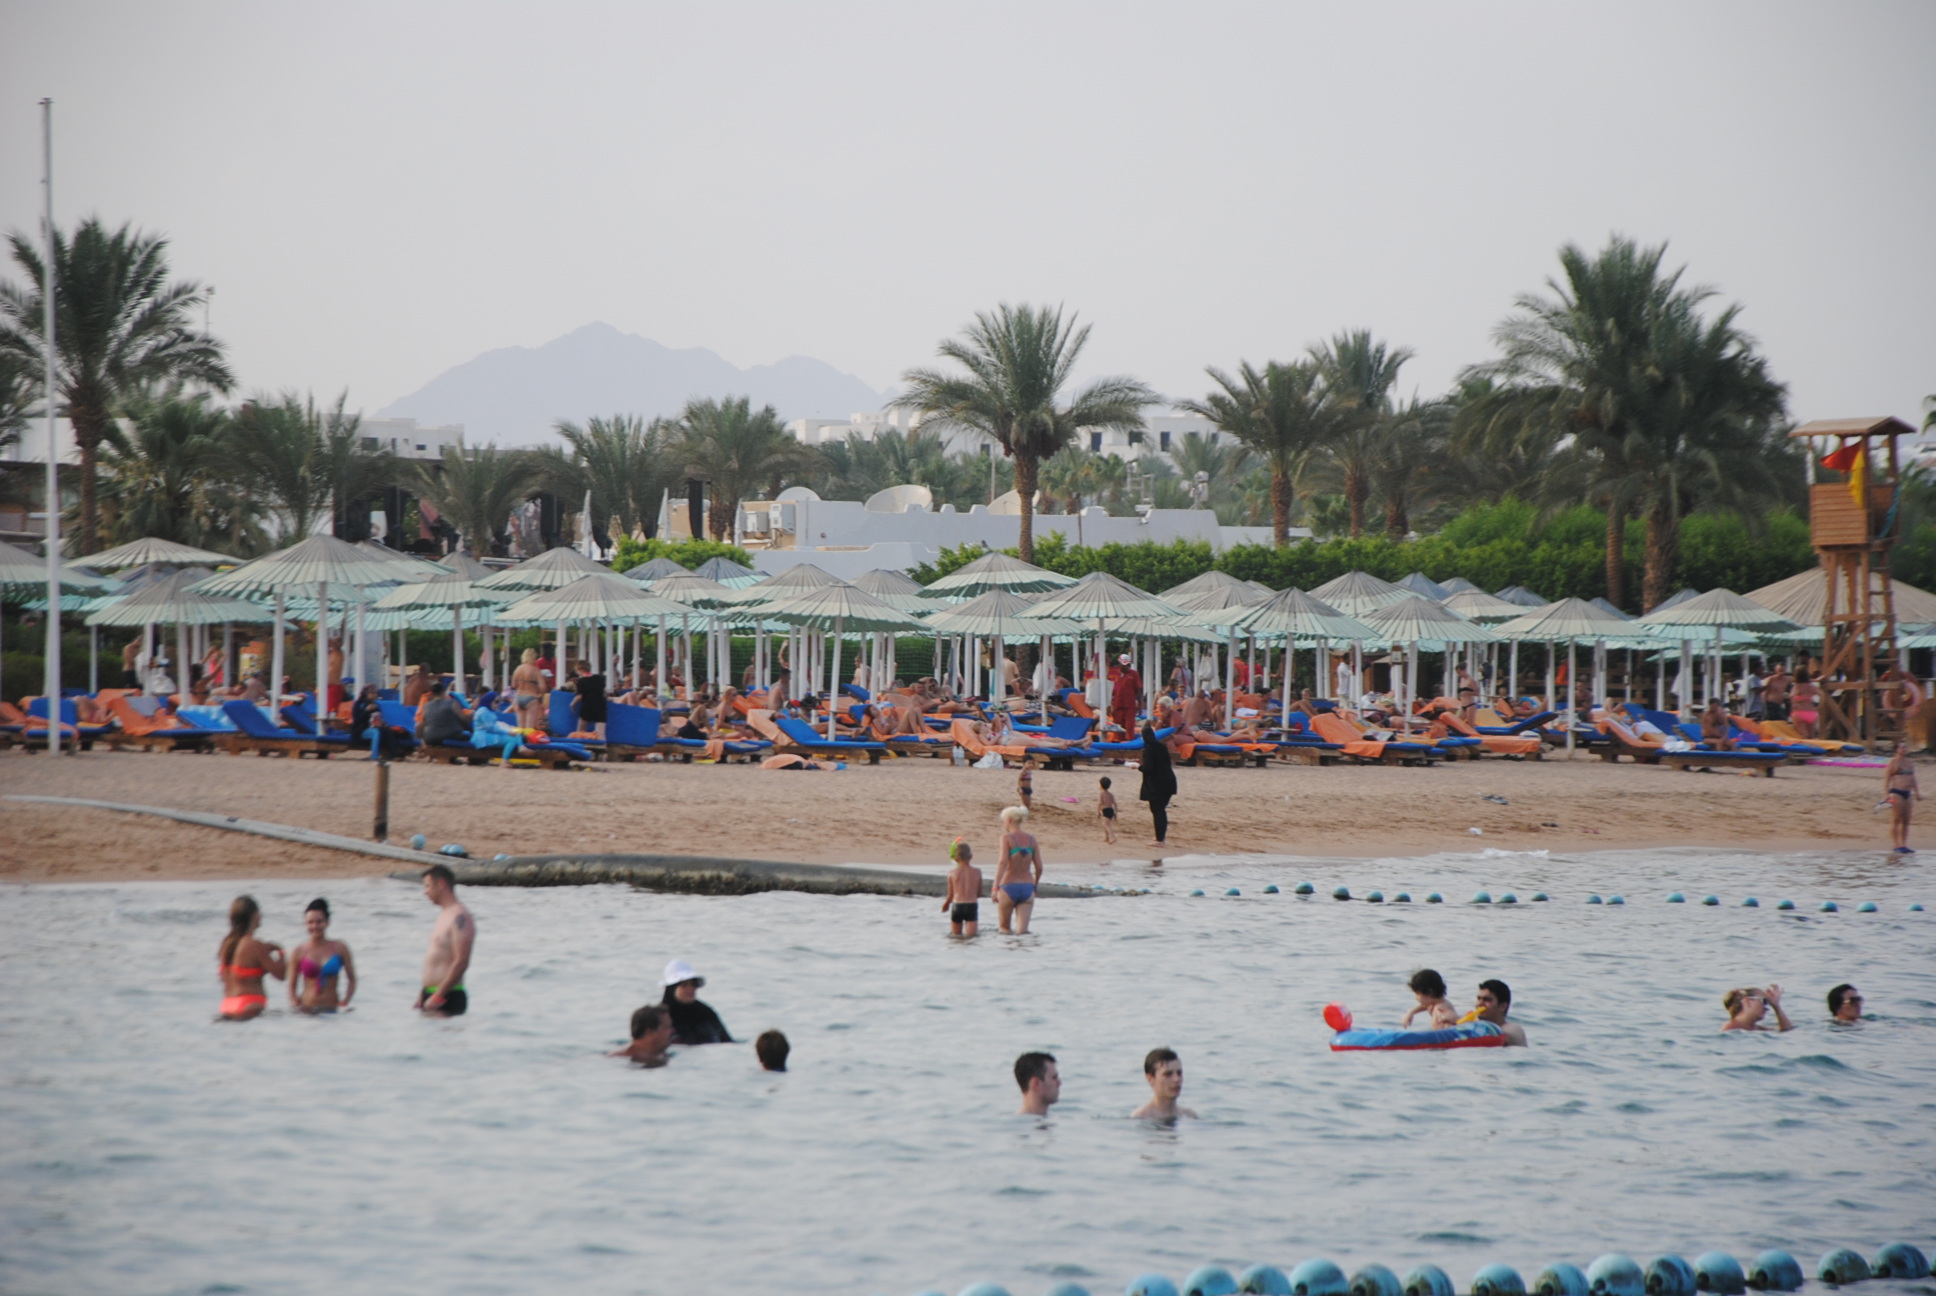 زعزوع: رجل أعمال سعودي يبحث إقامة أكبر منتجع سياحي في شرم الشيخ بـ 4 مليارات دولار